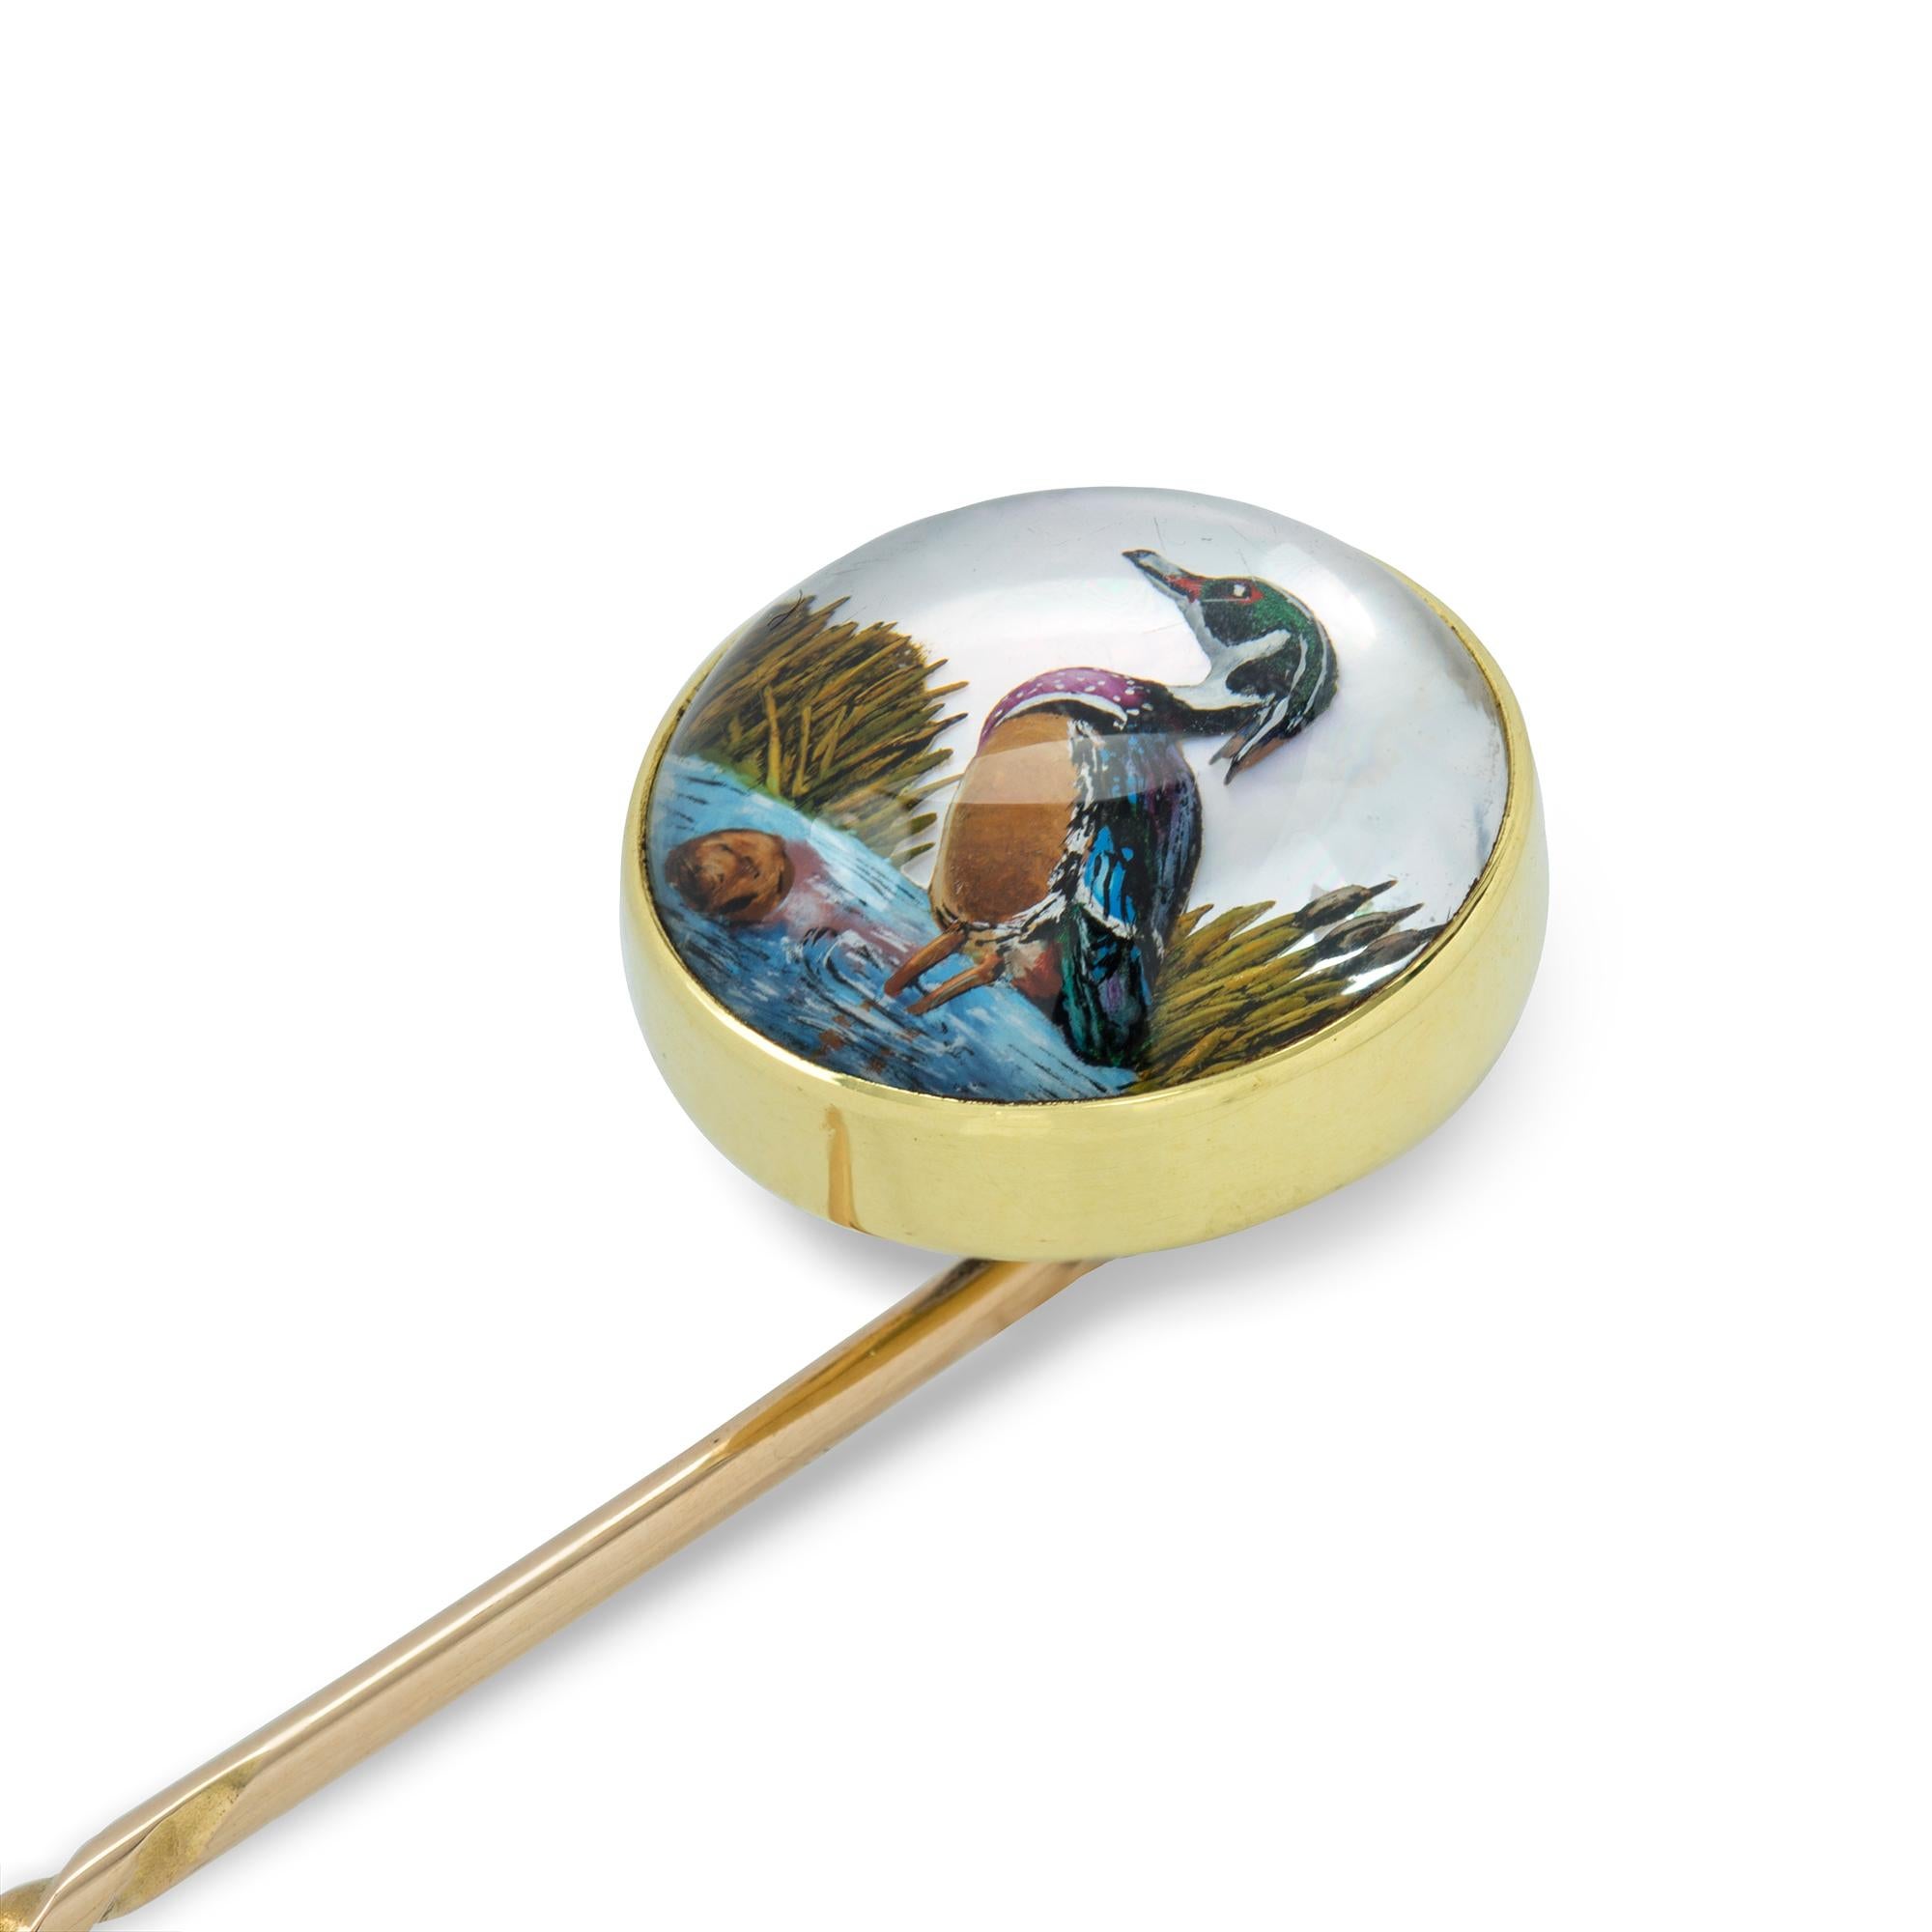 Eine runde Anstecknadel aus Essex-Kristall, Kristall im Cabochon-Schliff, der einen Vogel darstellt, auf einer Fassung aus 18-karätigem Gold mit Goldbeschlag, um 1900, der Schmuckteil misst 1,4 cm im Durchmesser, die Anstecknadel misst 6,8 cm,